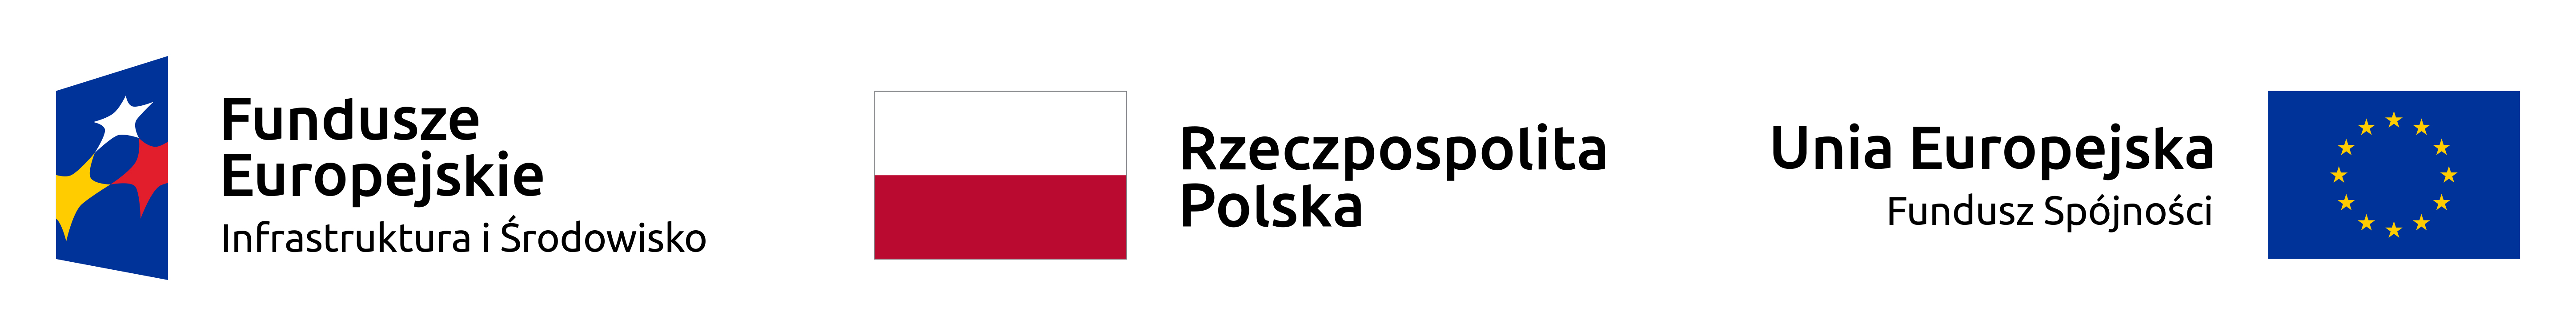 3 logo, ułożone poziomo, od lewej logo i nazwa Fundusze Europejskie Infrastruktura i Środowisko, na środku flaga i nazwa Rzeczpospolita Polska, od prawej nazwa i logo Unia Europejska Fundusz Spójności